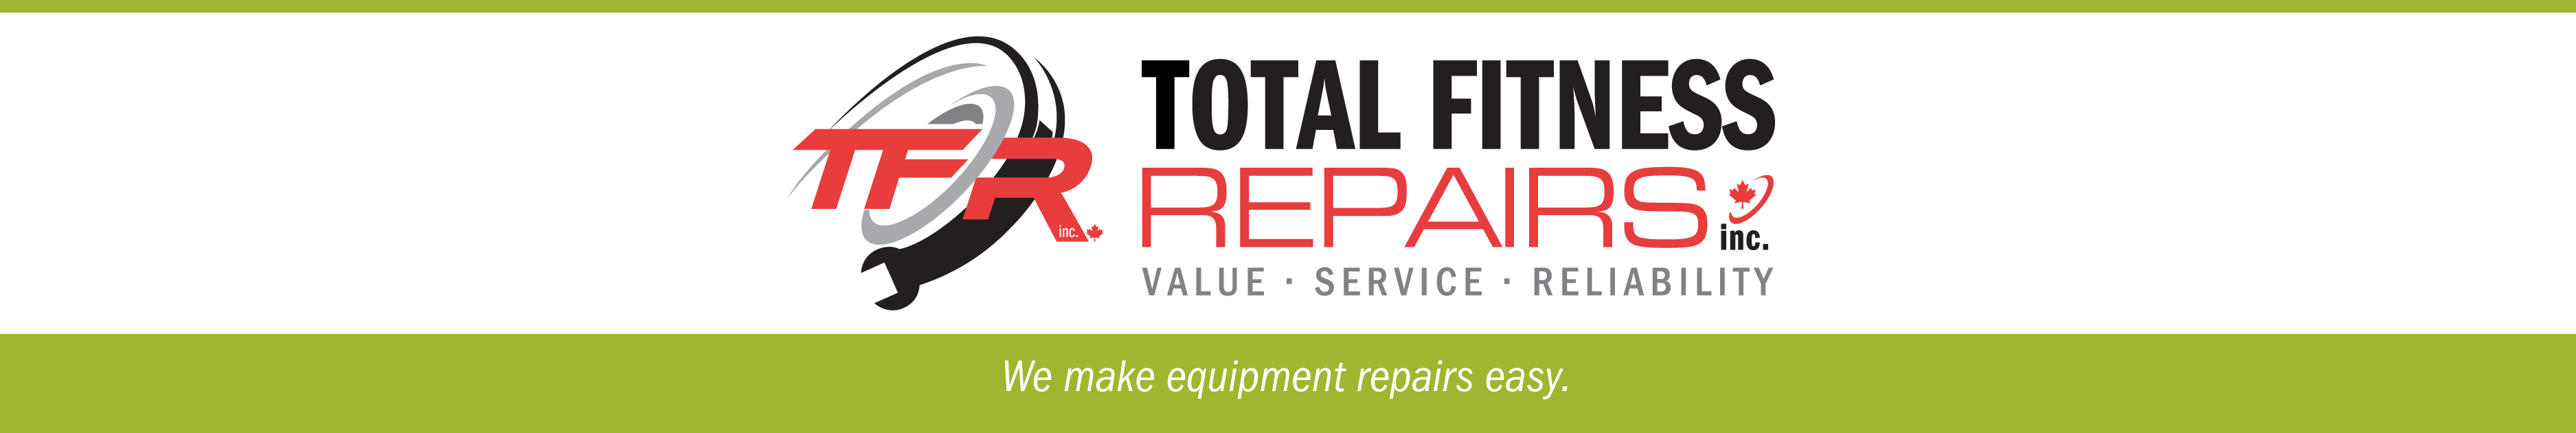 Total Fitness Repairs, Inc.